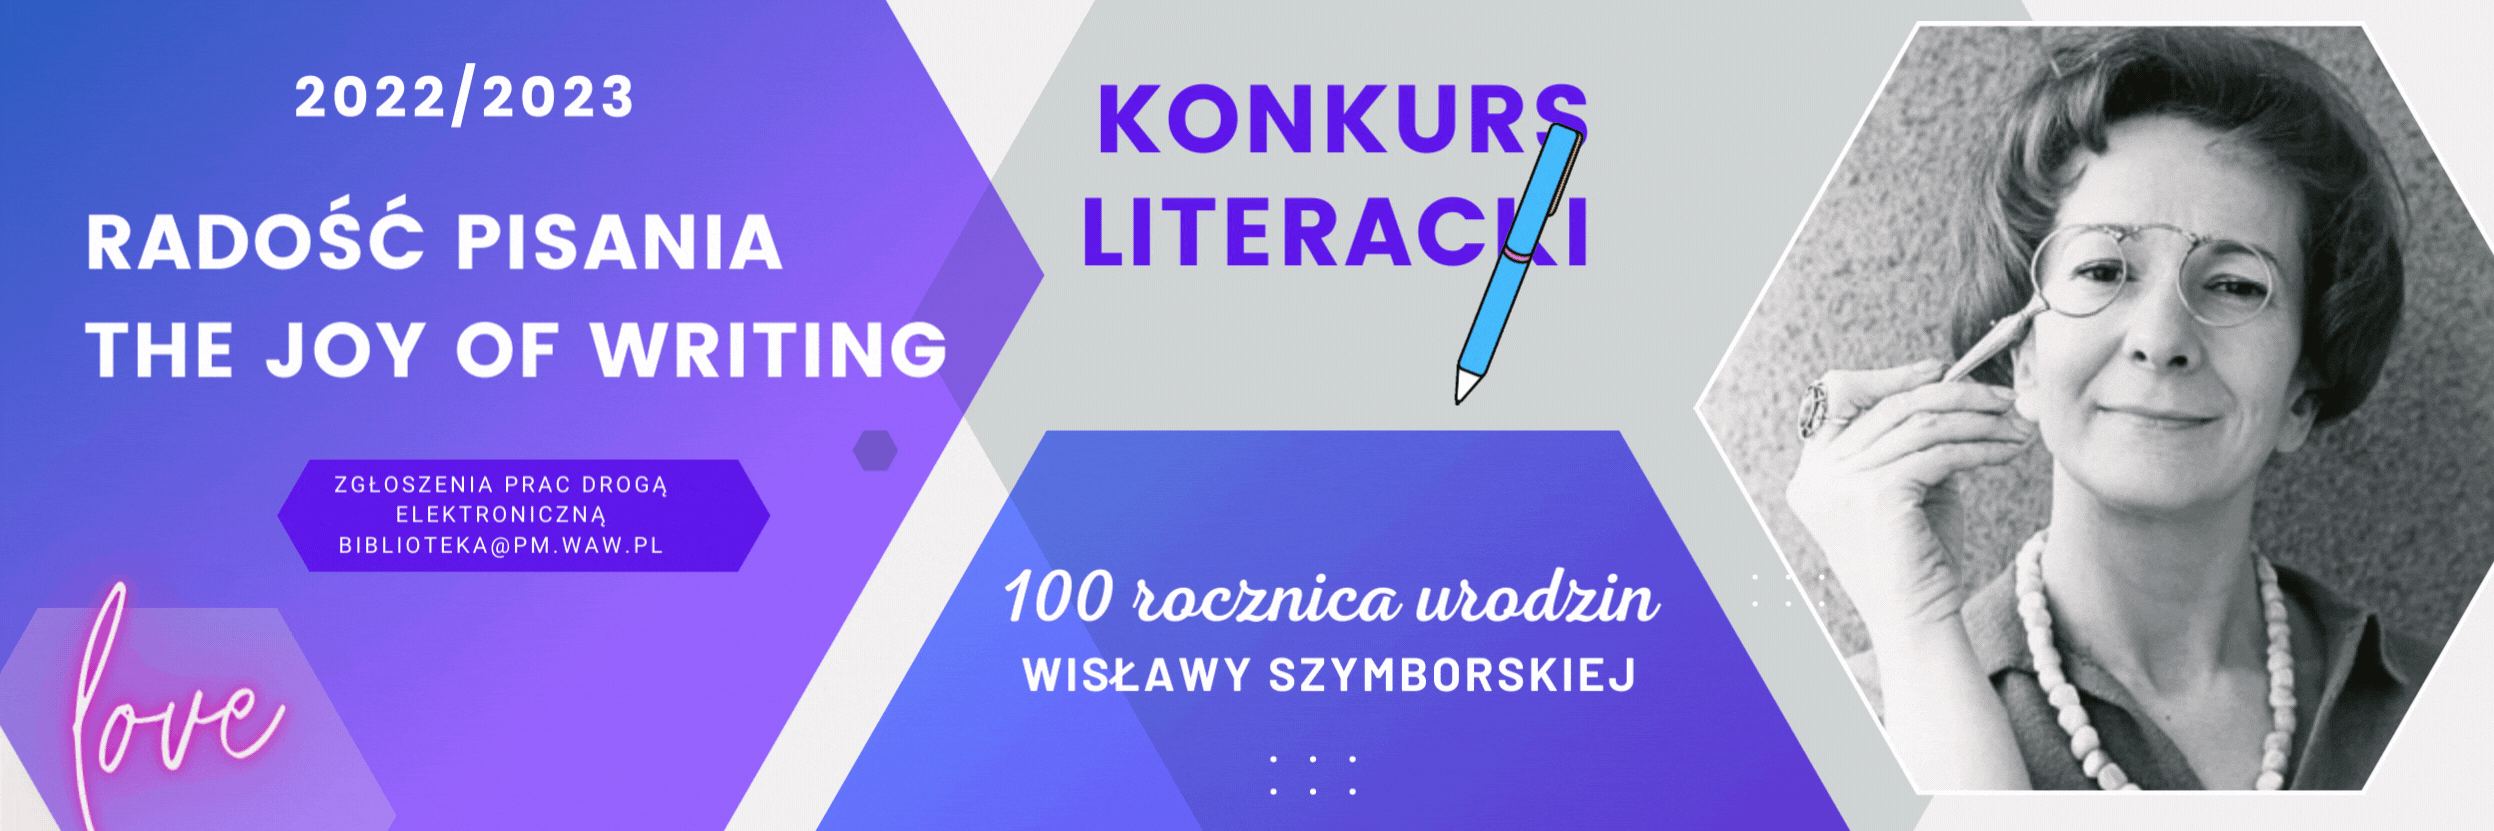 Konkurs literacki Radość pisania – The Joy of Writing